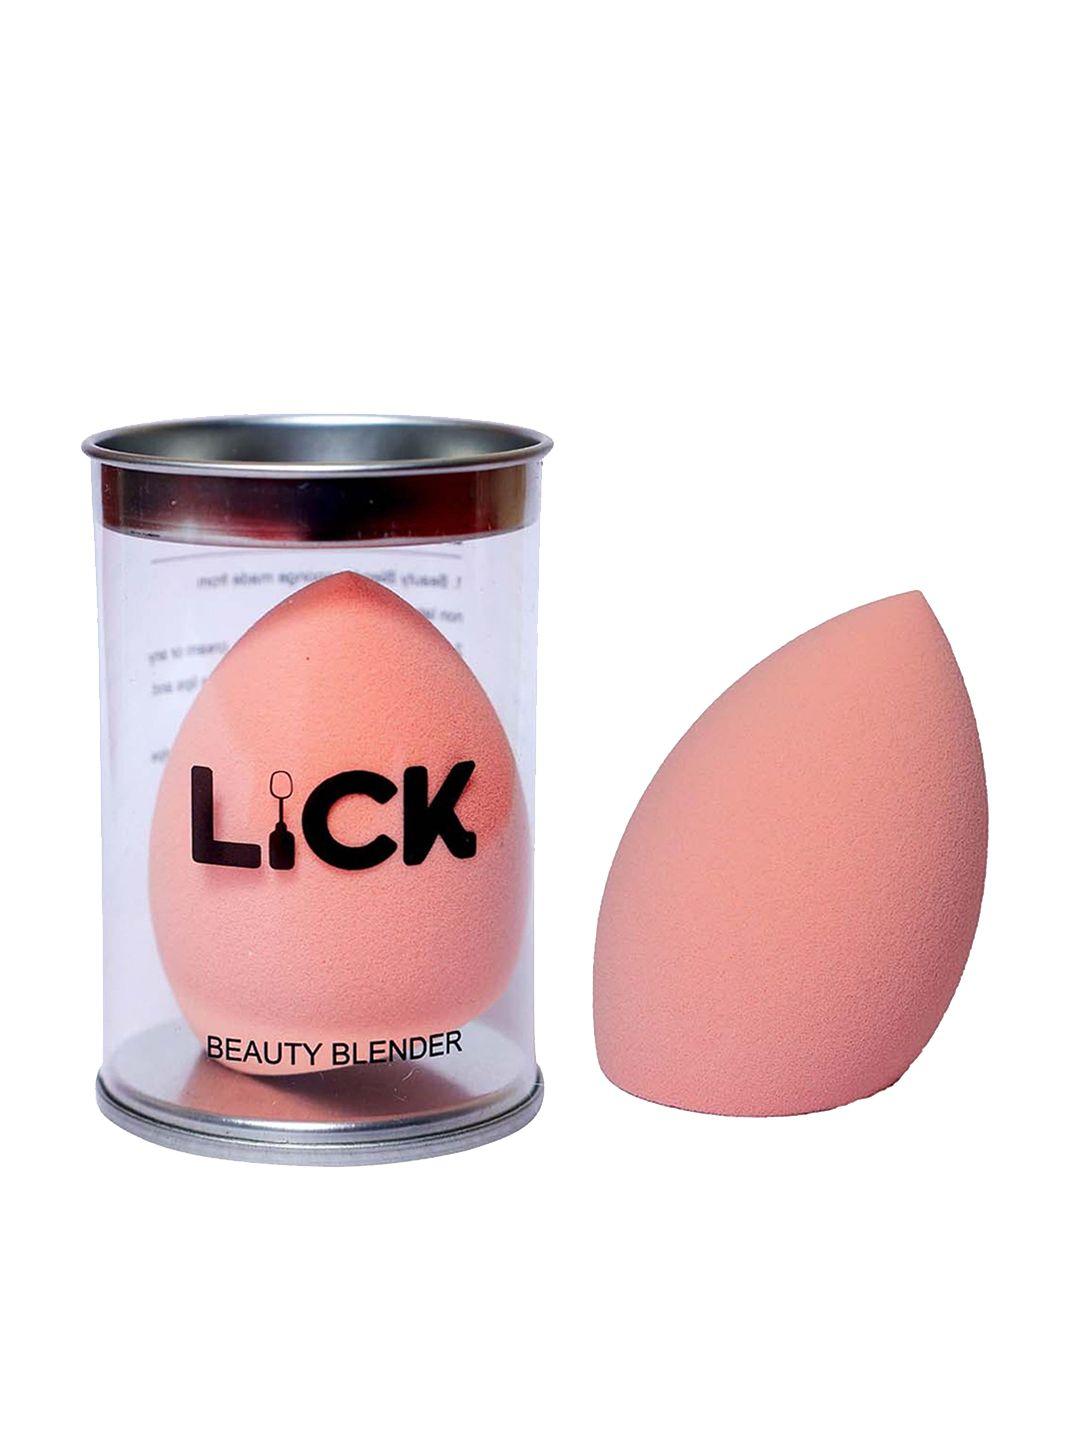 lick beauty blender sponge - peach